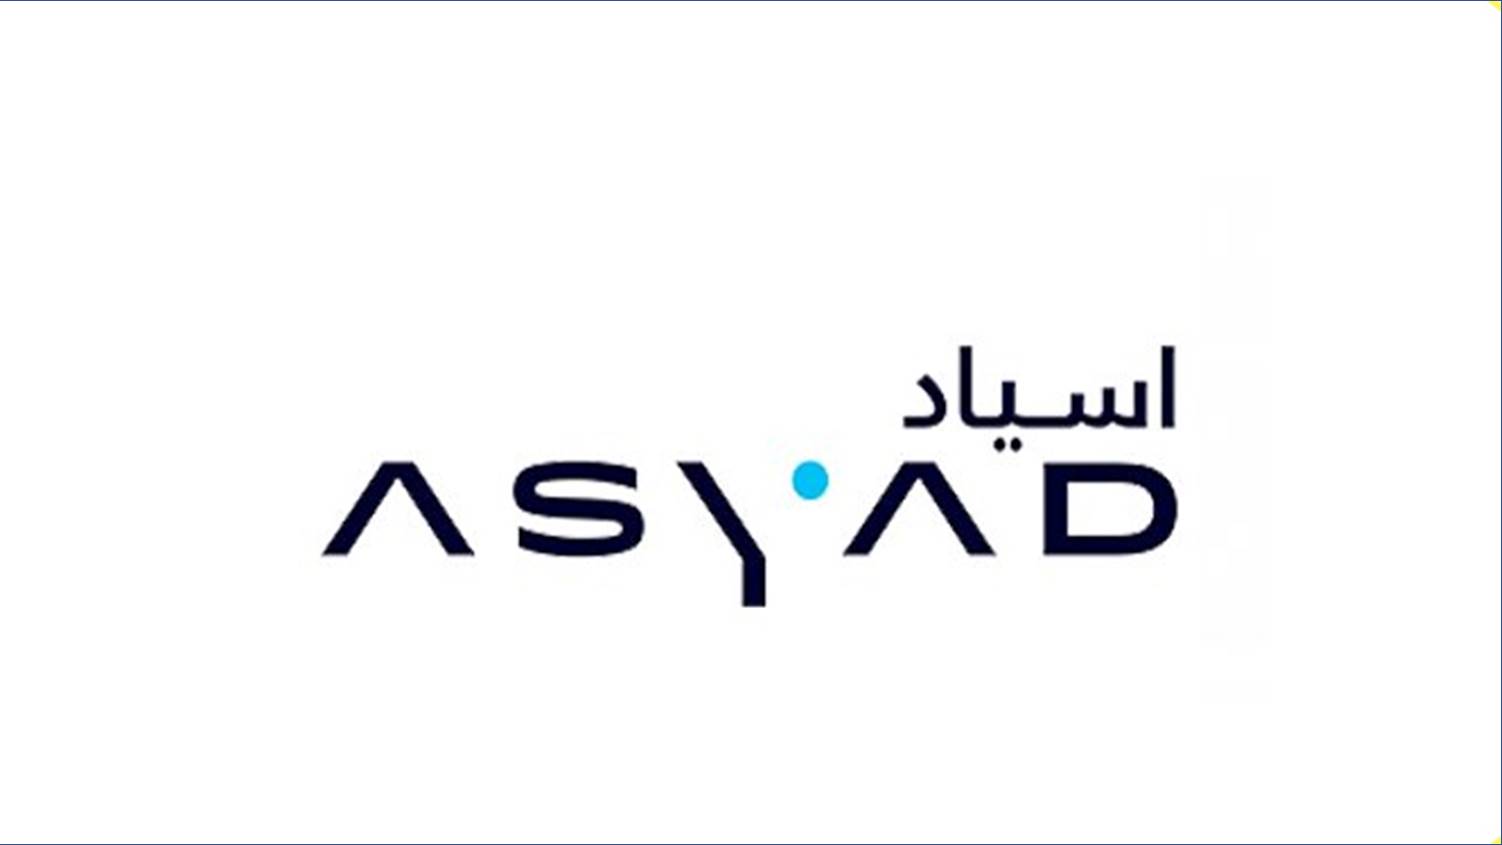 شركة اسياد في سلطنة عمان تعلن عن وظائف جديدة